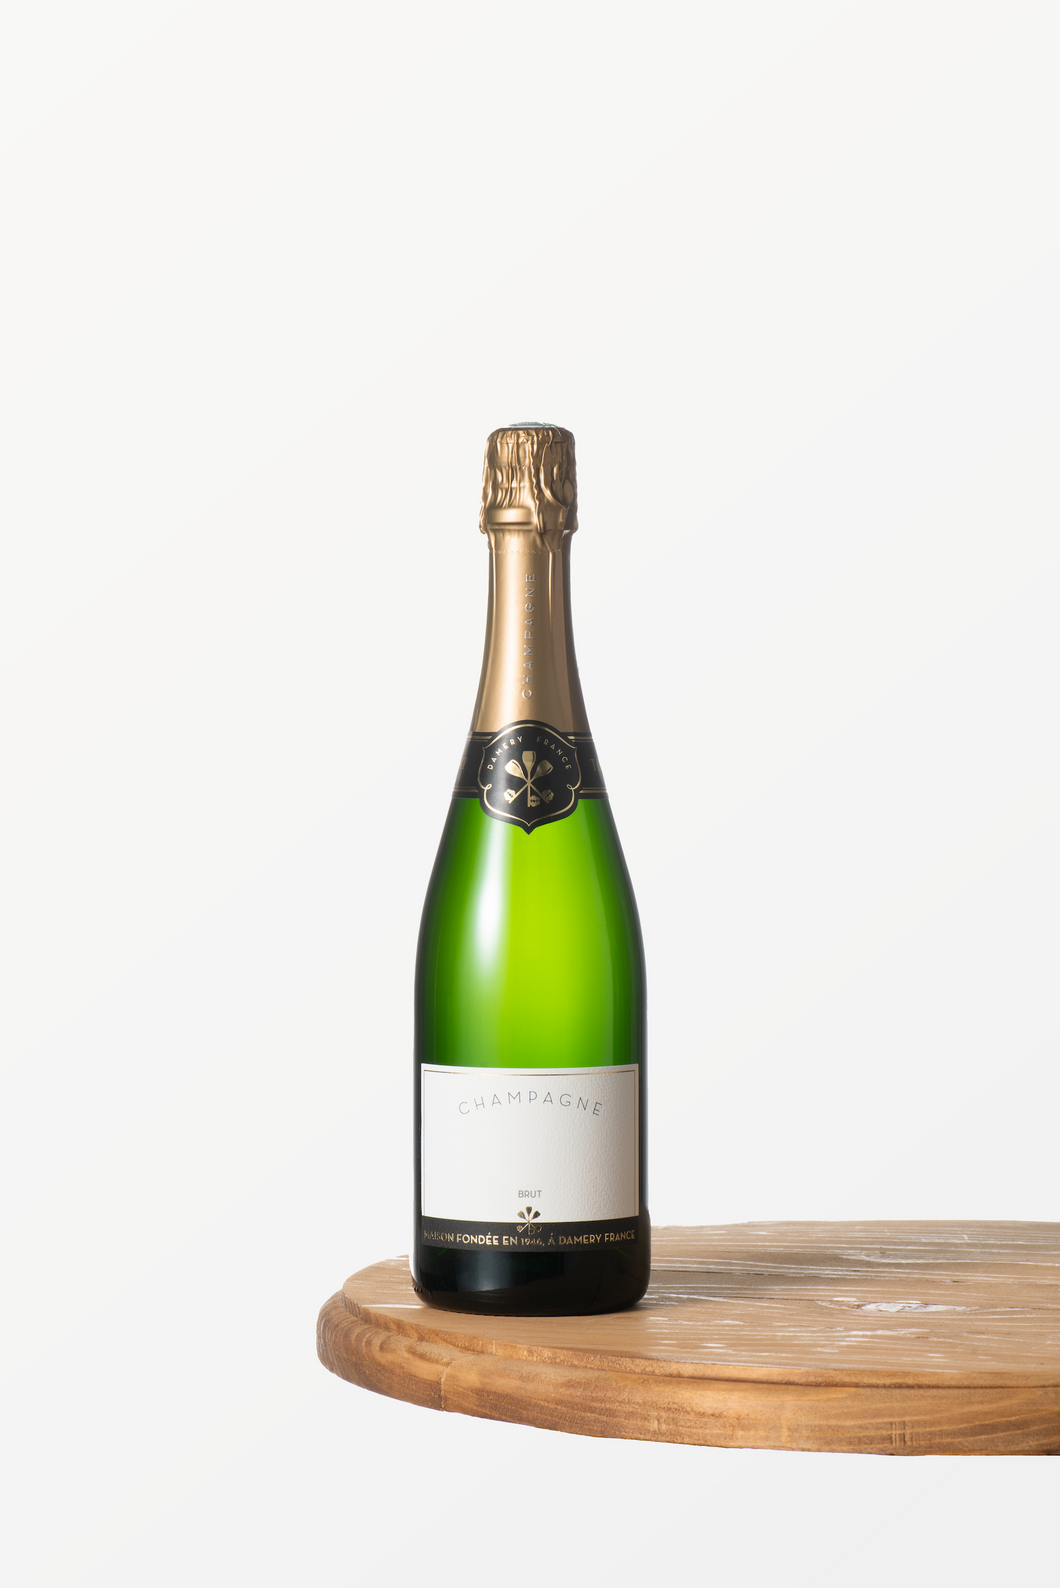 1 bottle of Custom Champagne Brut - 0.75L